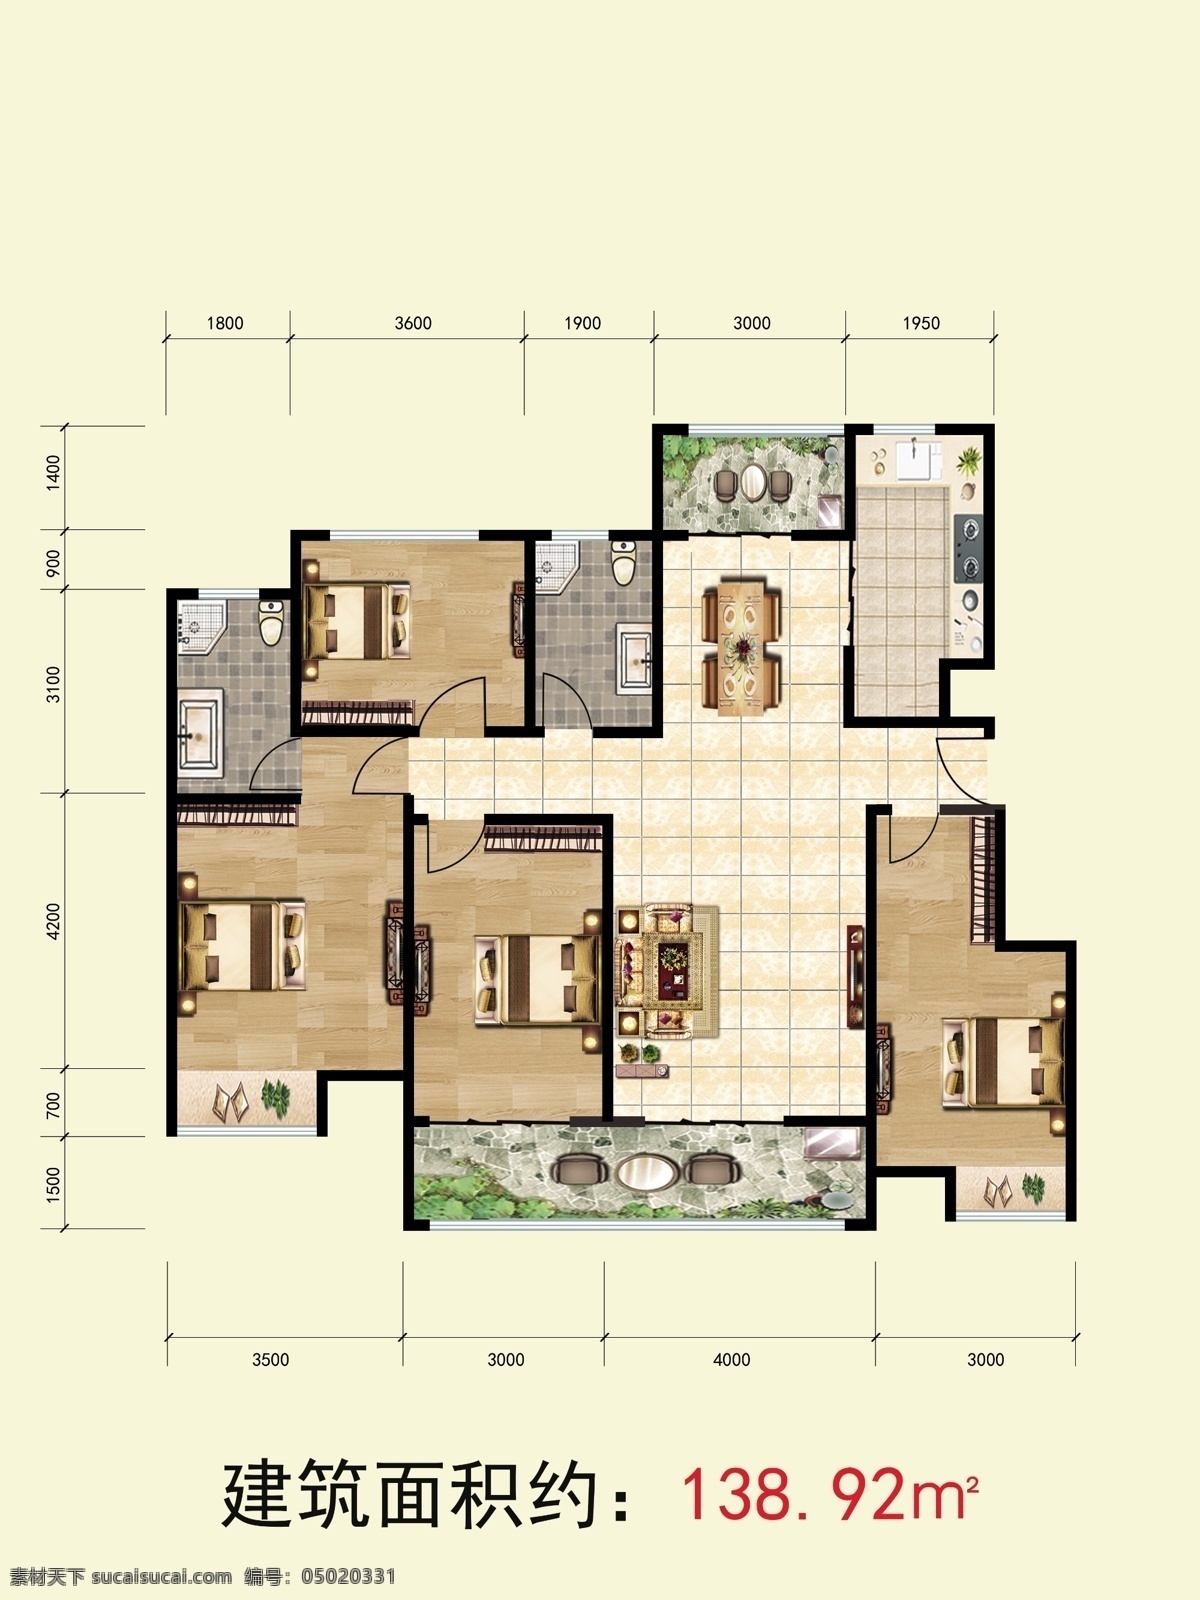 户型图 平面图 效果图 房地产 面积 分层